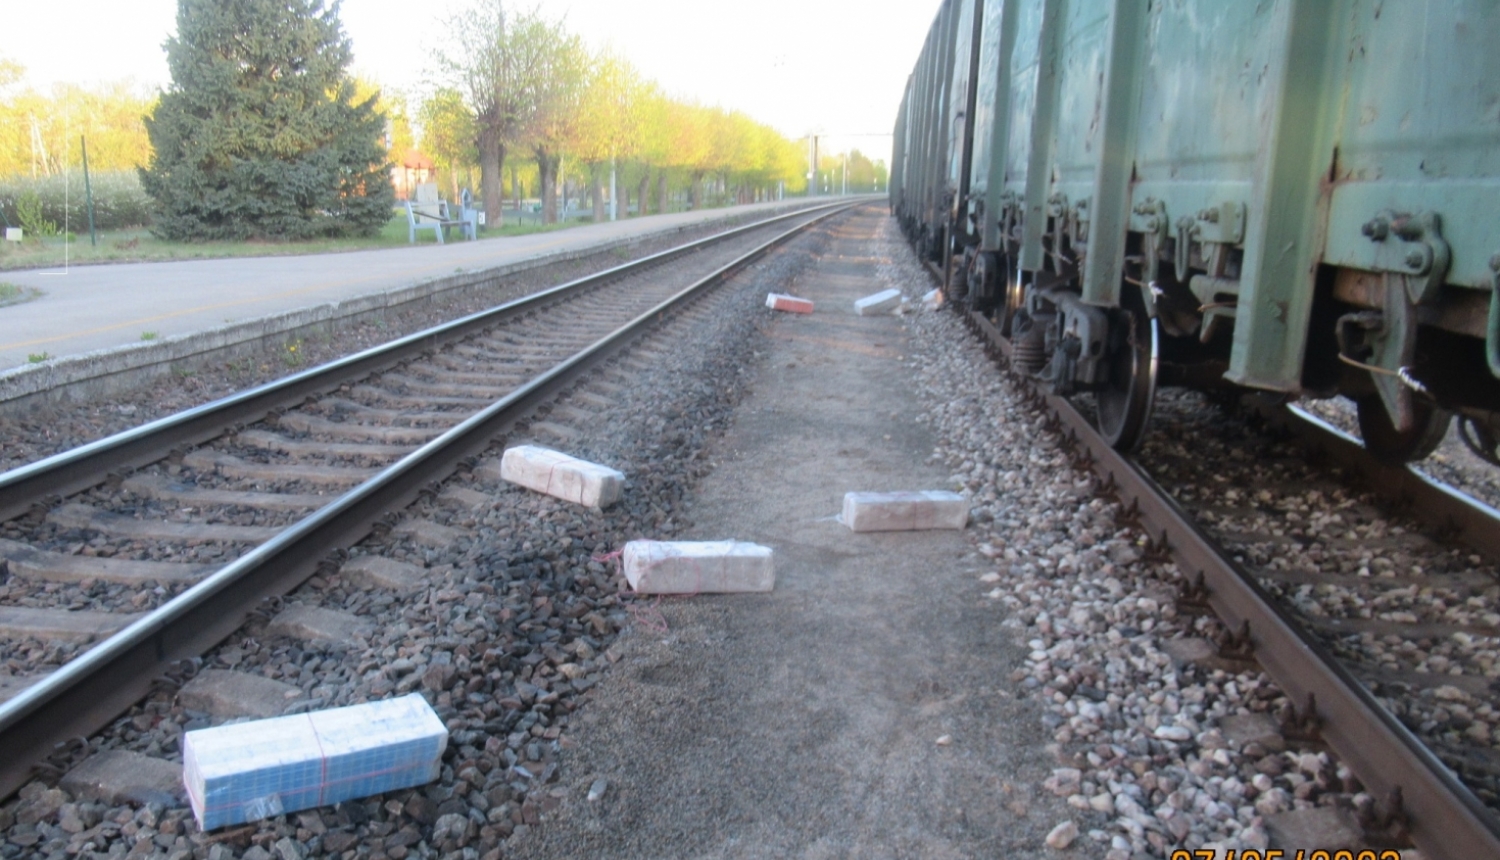 Kontrabandas cigarešu iepakojumi starp dzelzceļa sliedēm